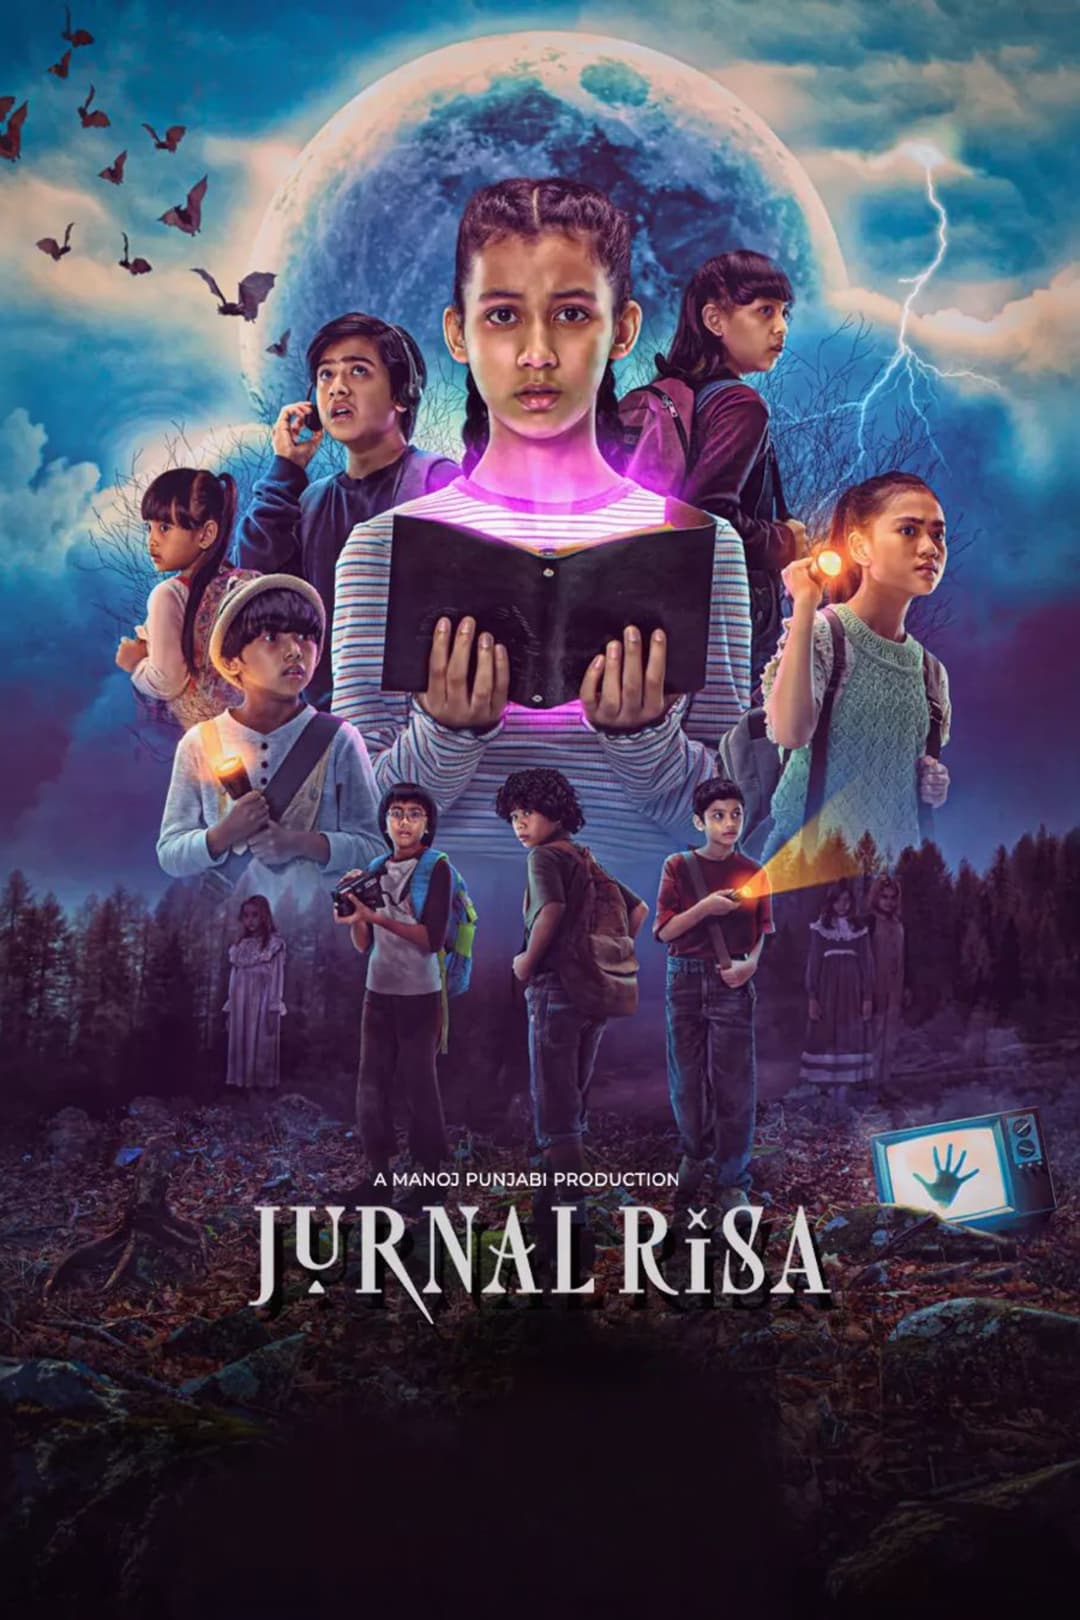 TV ratings for Jurnal Risa in Noruega. Disney+ Hotstar TV series